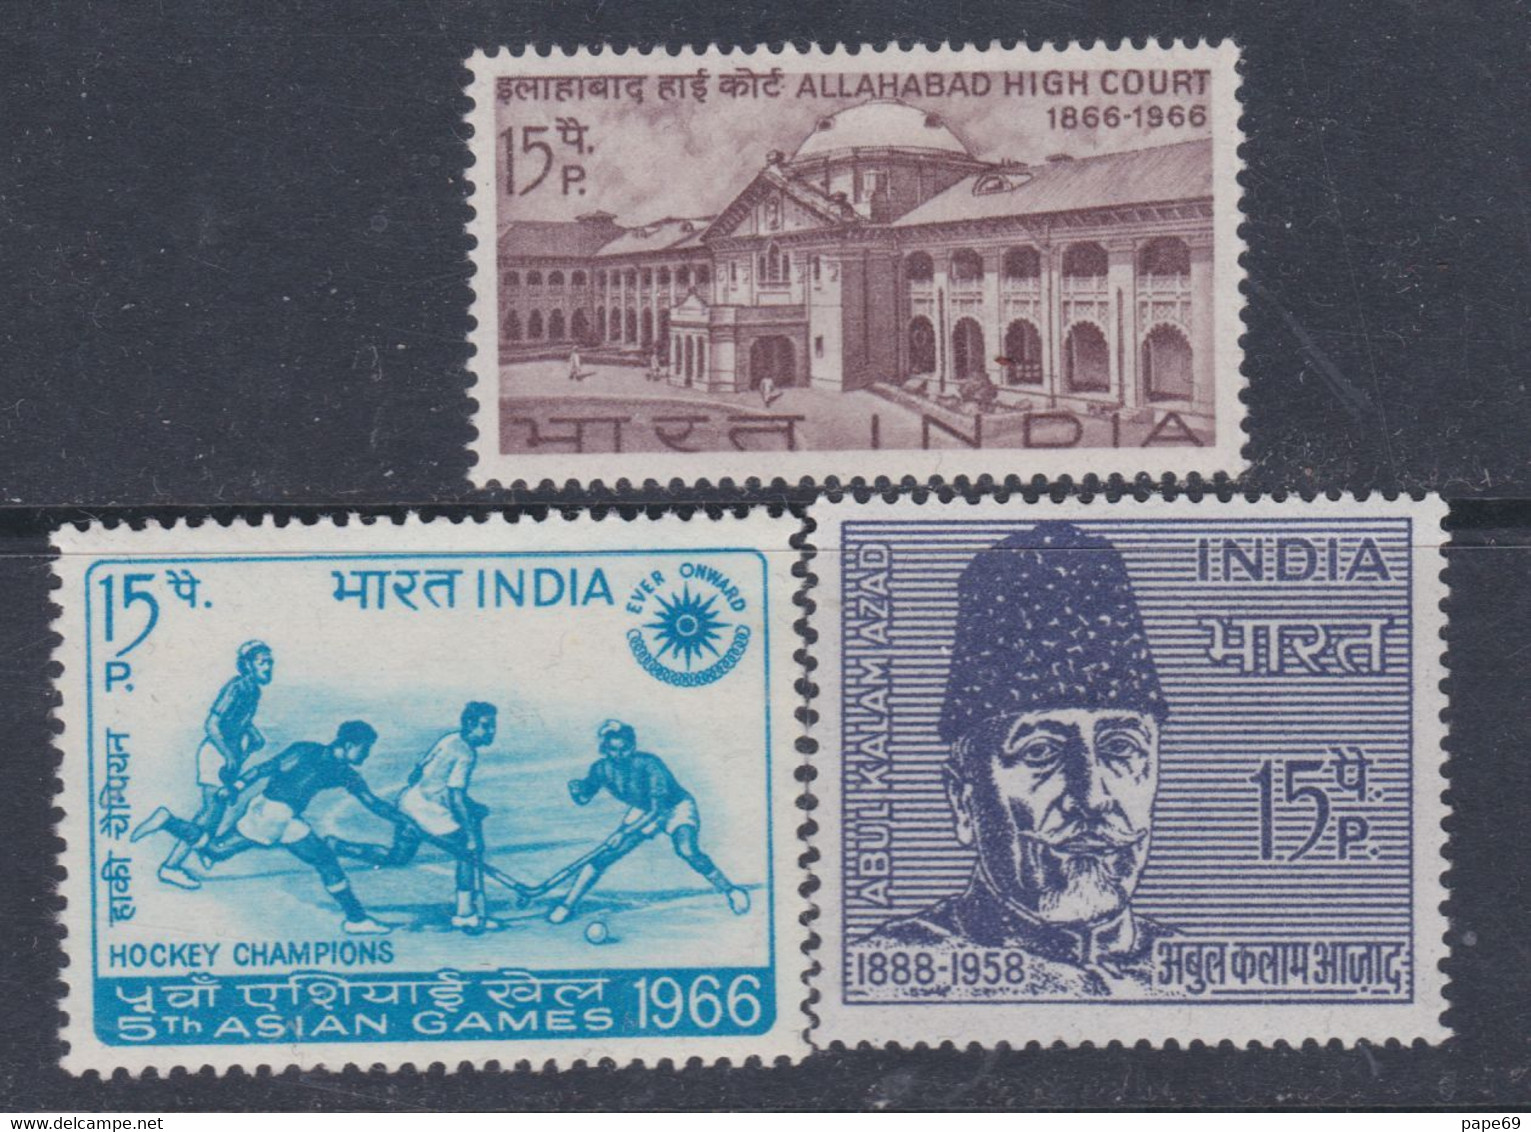 Inde N°  213 / 15 X  : Les 3 Valeurs Trace De Charnière Sinon TB - Unused Stamps